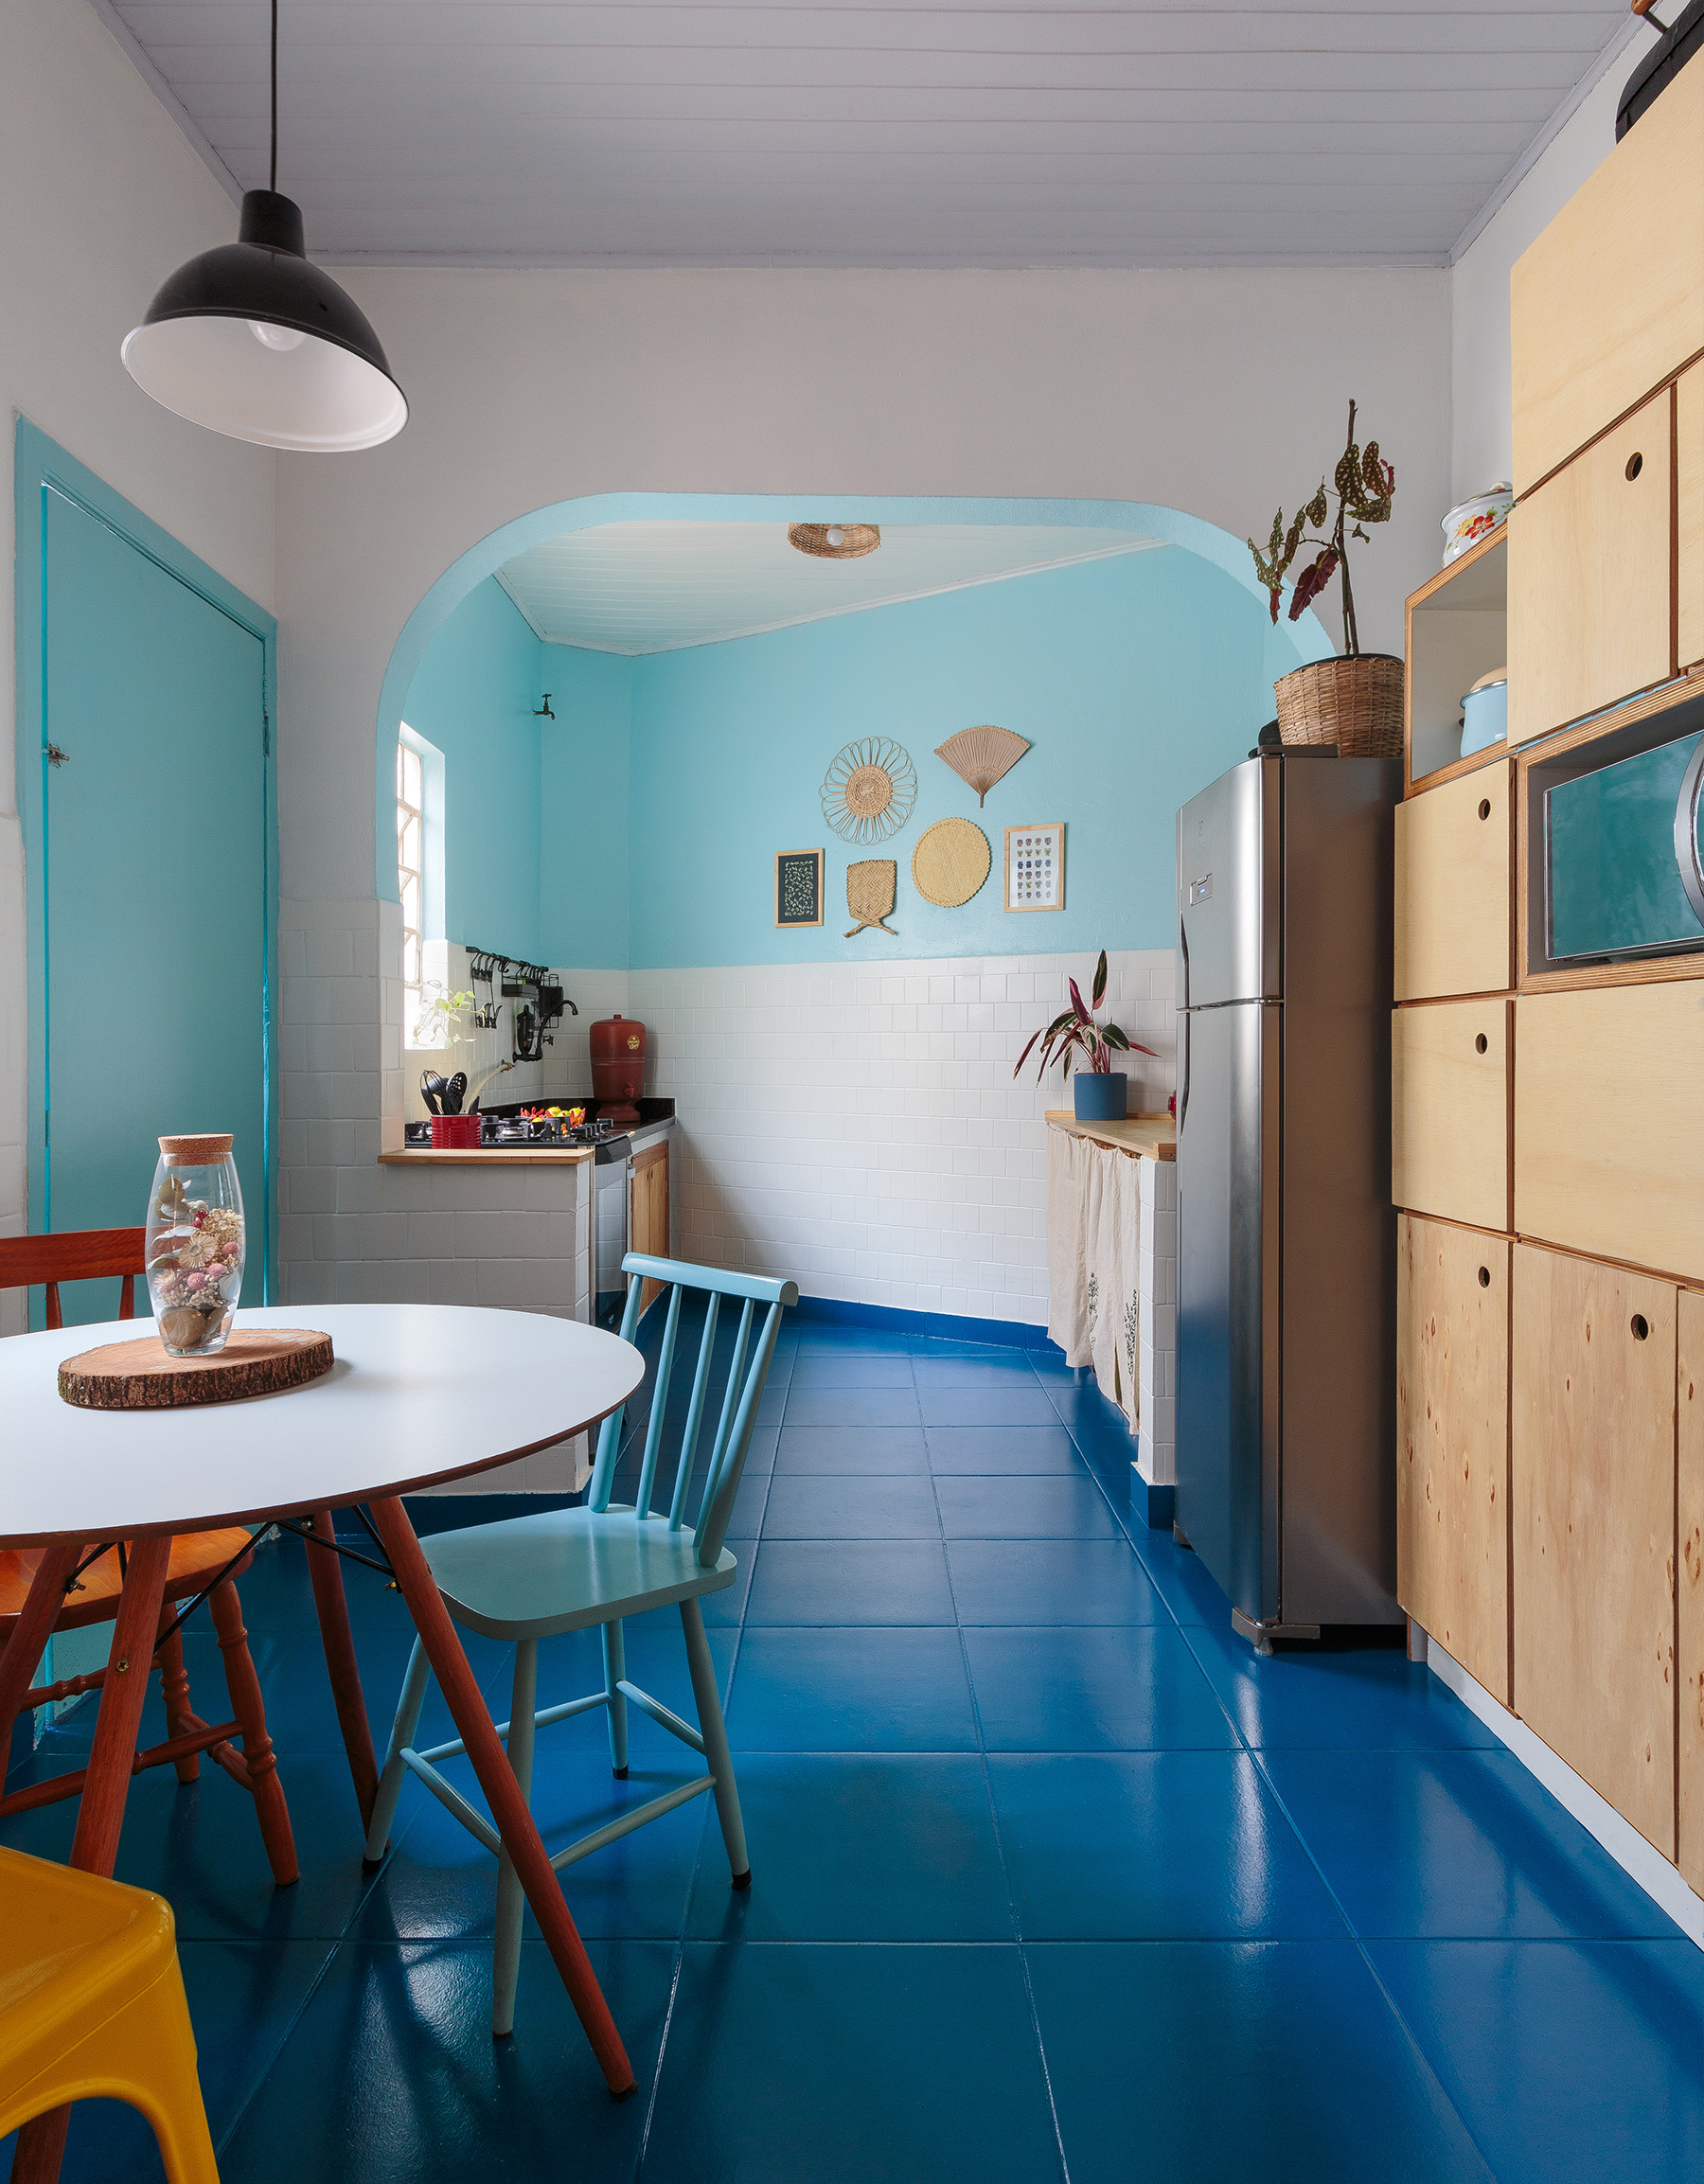 Decoracão de cozinha colorida com piso de azulejos pintados de azul